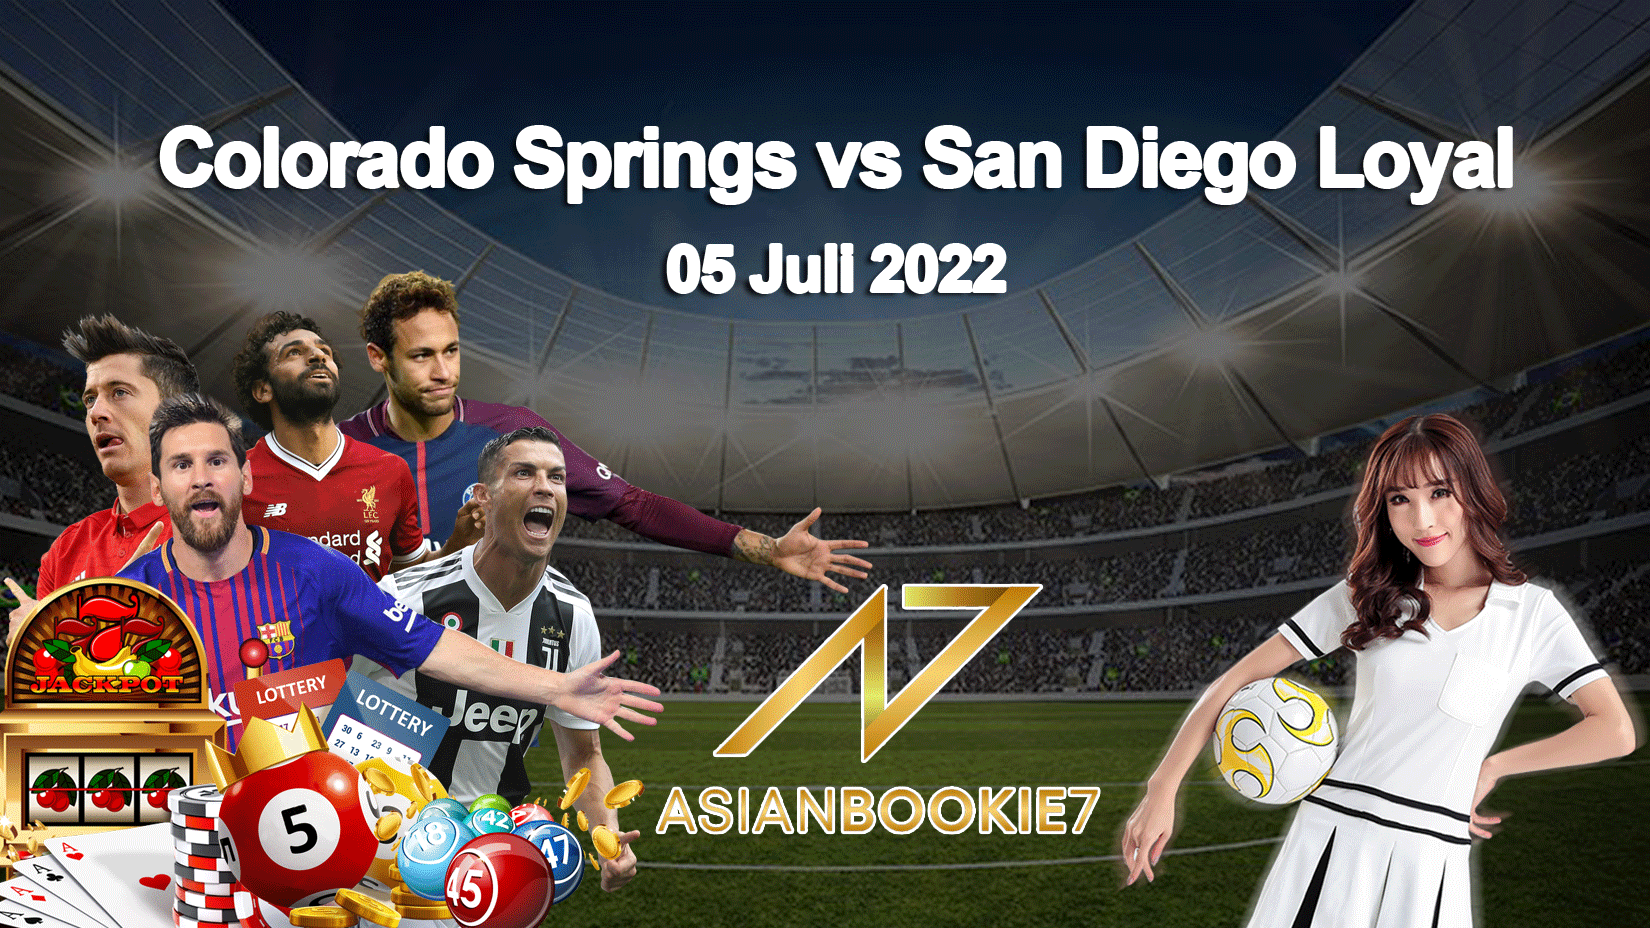 Prediksi Colorado Springs vs San Diego Loyal 05 Juli 2022